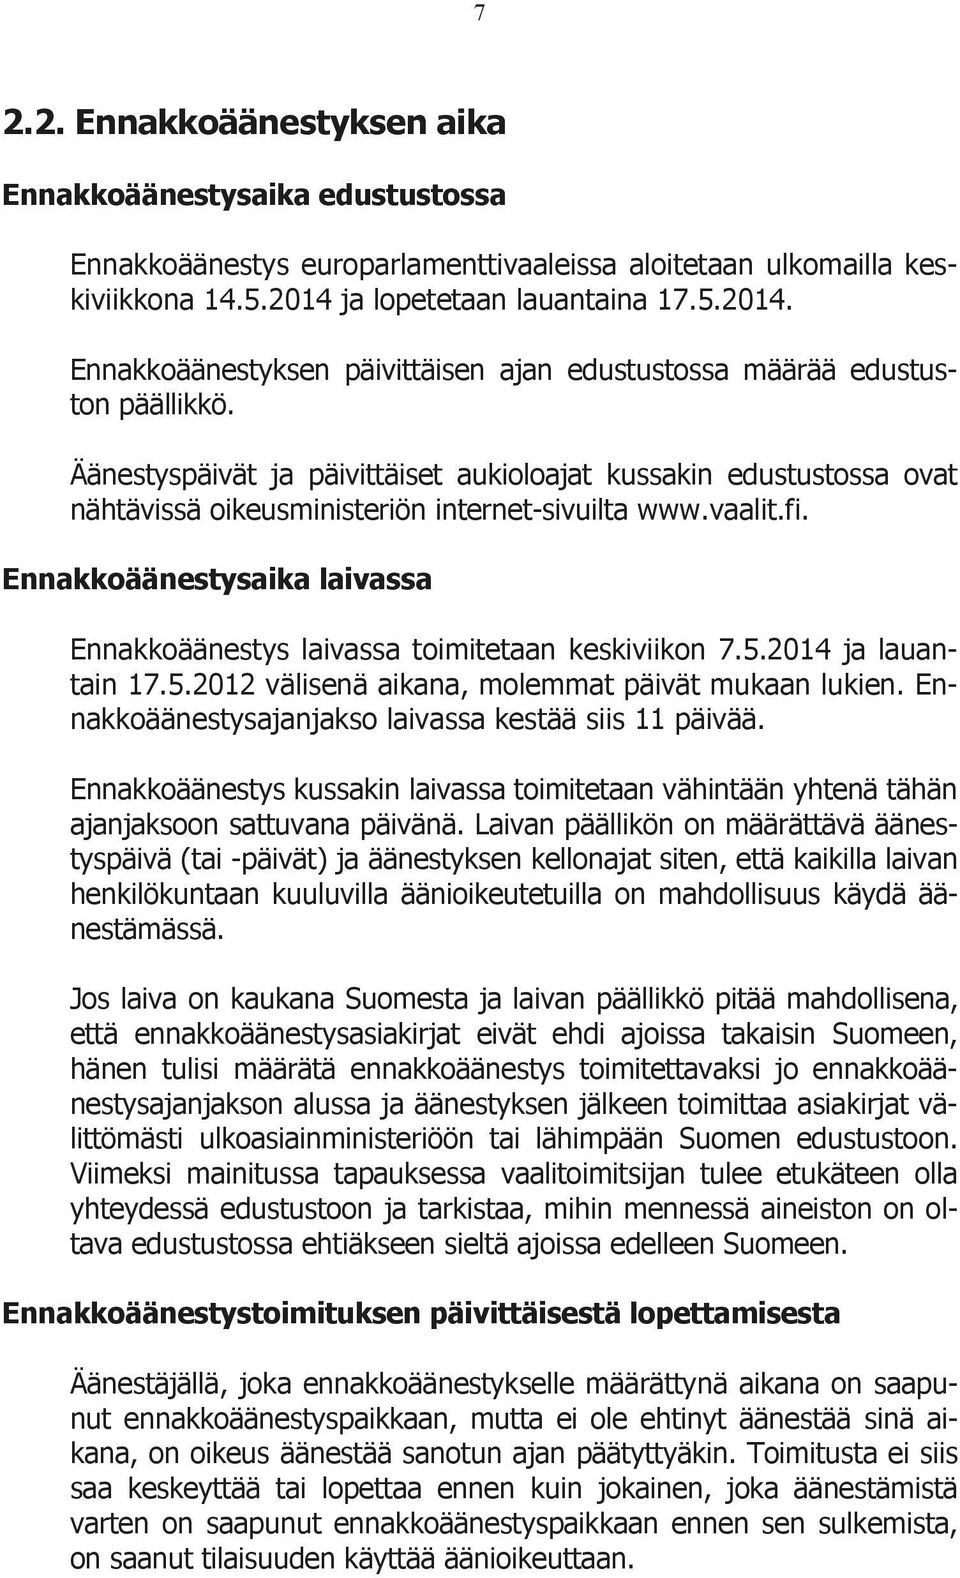 Äänestyspäivät ja päivittäiset aukioloajat kussakin edustustossa ovat nähtävissä oikeusministeriön internet-sivuilta www.vaalit.fi.